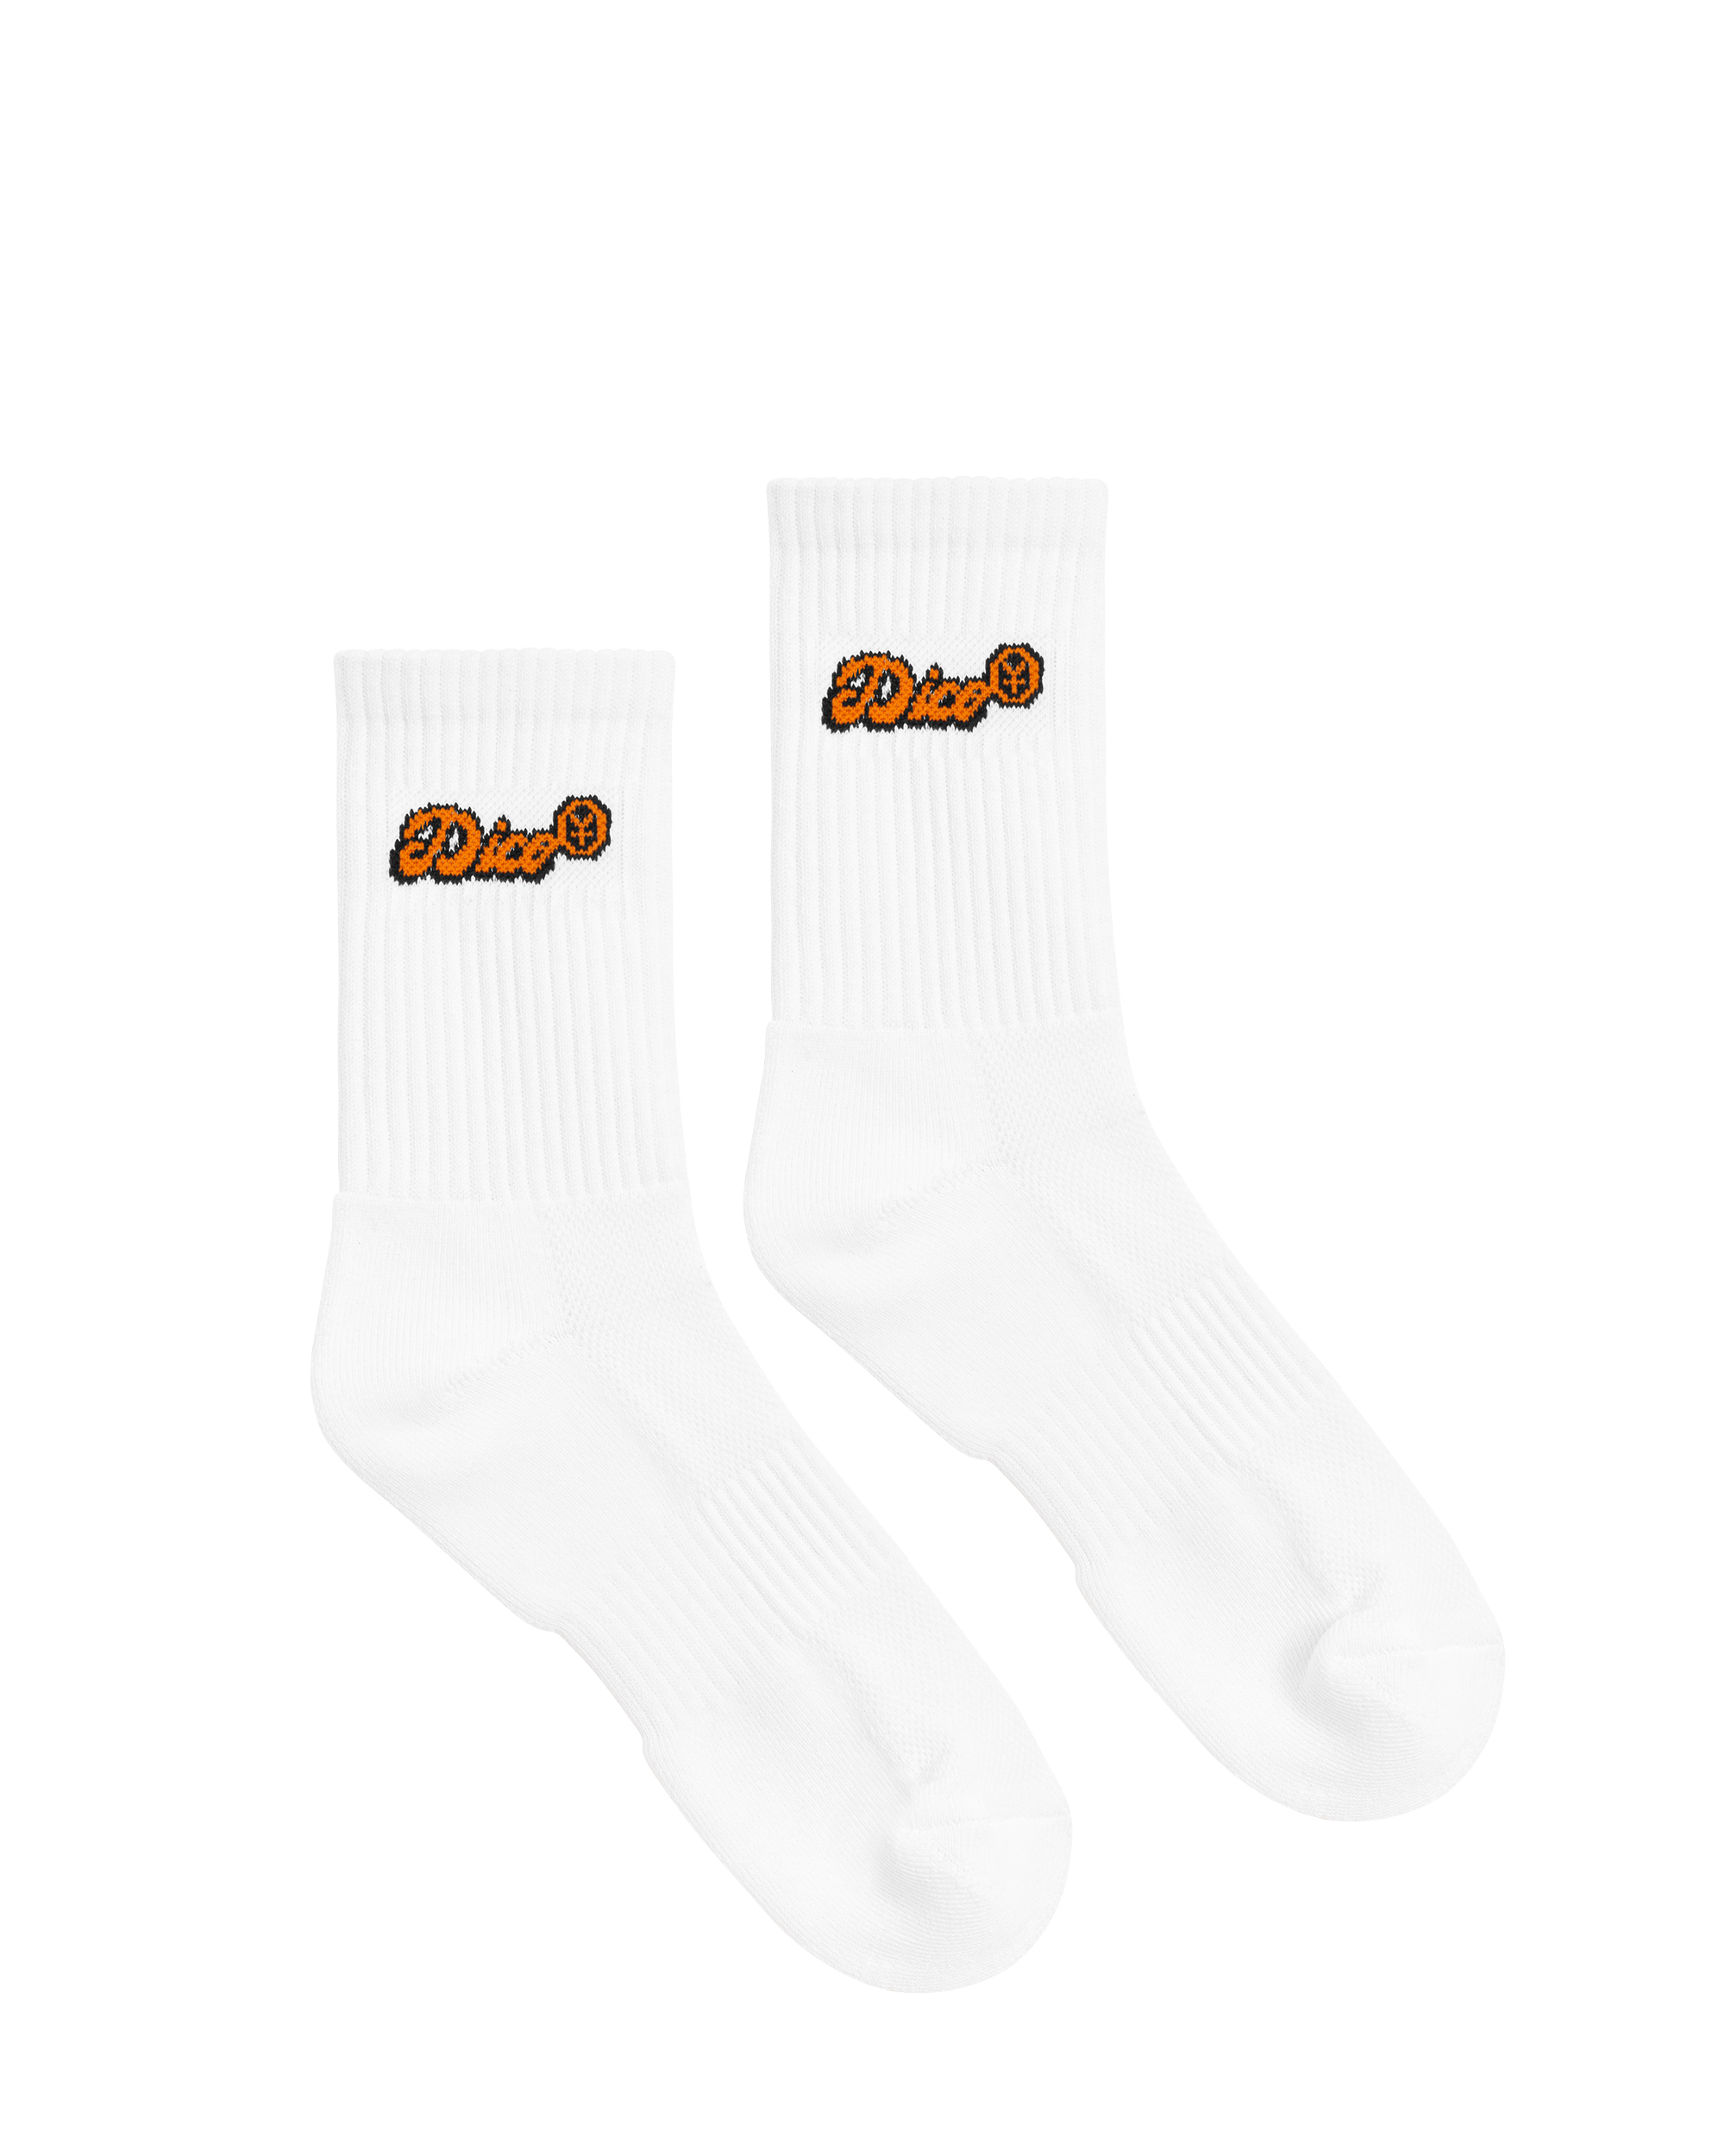 Dico Comfy Socks - Orange/White - Pack of 3